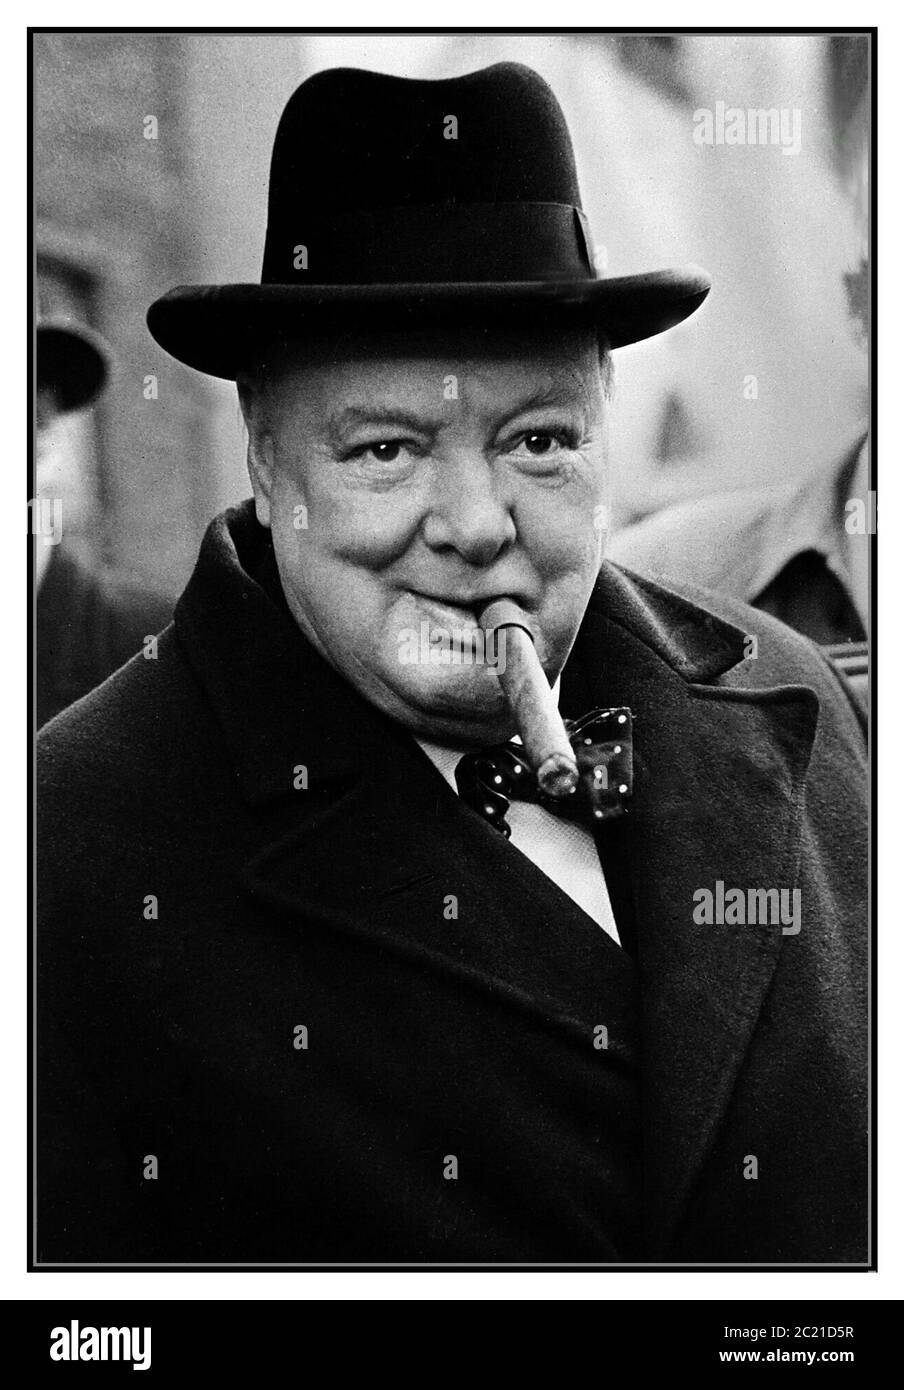 WINSTON CHURCHILL MIT ZIGARRENSCHLEIFE UND HOMBURG HAT Großbritanniens größter und verehrter Kriegsführer, dessen großartige Reden eine Nation dazu veranlassten, der Aggression Nazideutschlands im Zweiten Weltkrieg erfolgreich zu widerstehen In diesem Bild der Nachkriegszeit 1947/1948 raucht er seine Lieblingszigarre. Churchill wurde für seine Dienste in Großbritannien zum Ritter geschlagen, als Sir Winston Leonard Spencer Churchill. Ein großer englischer Schriftsteller und begeisterter Künstler Maler (1874-1965). Stockfoto